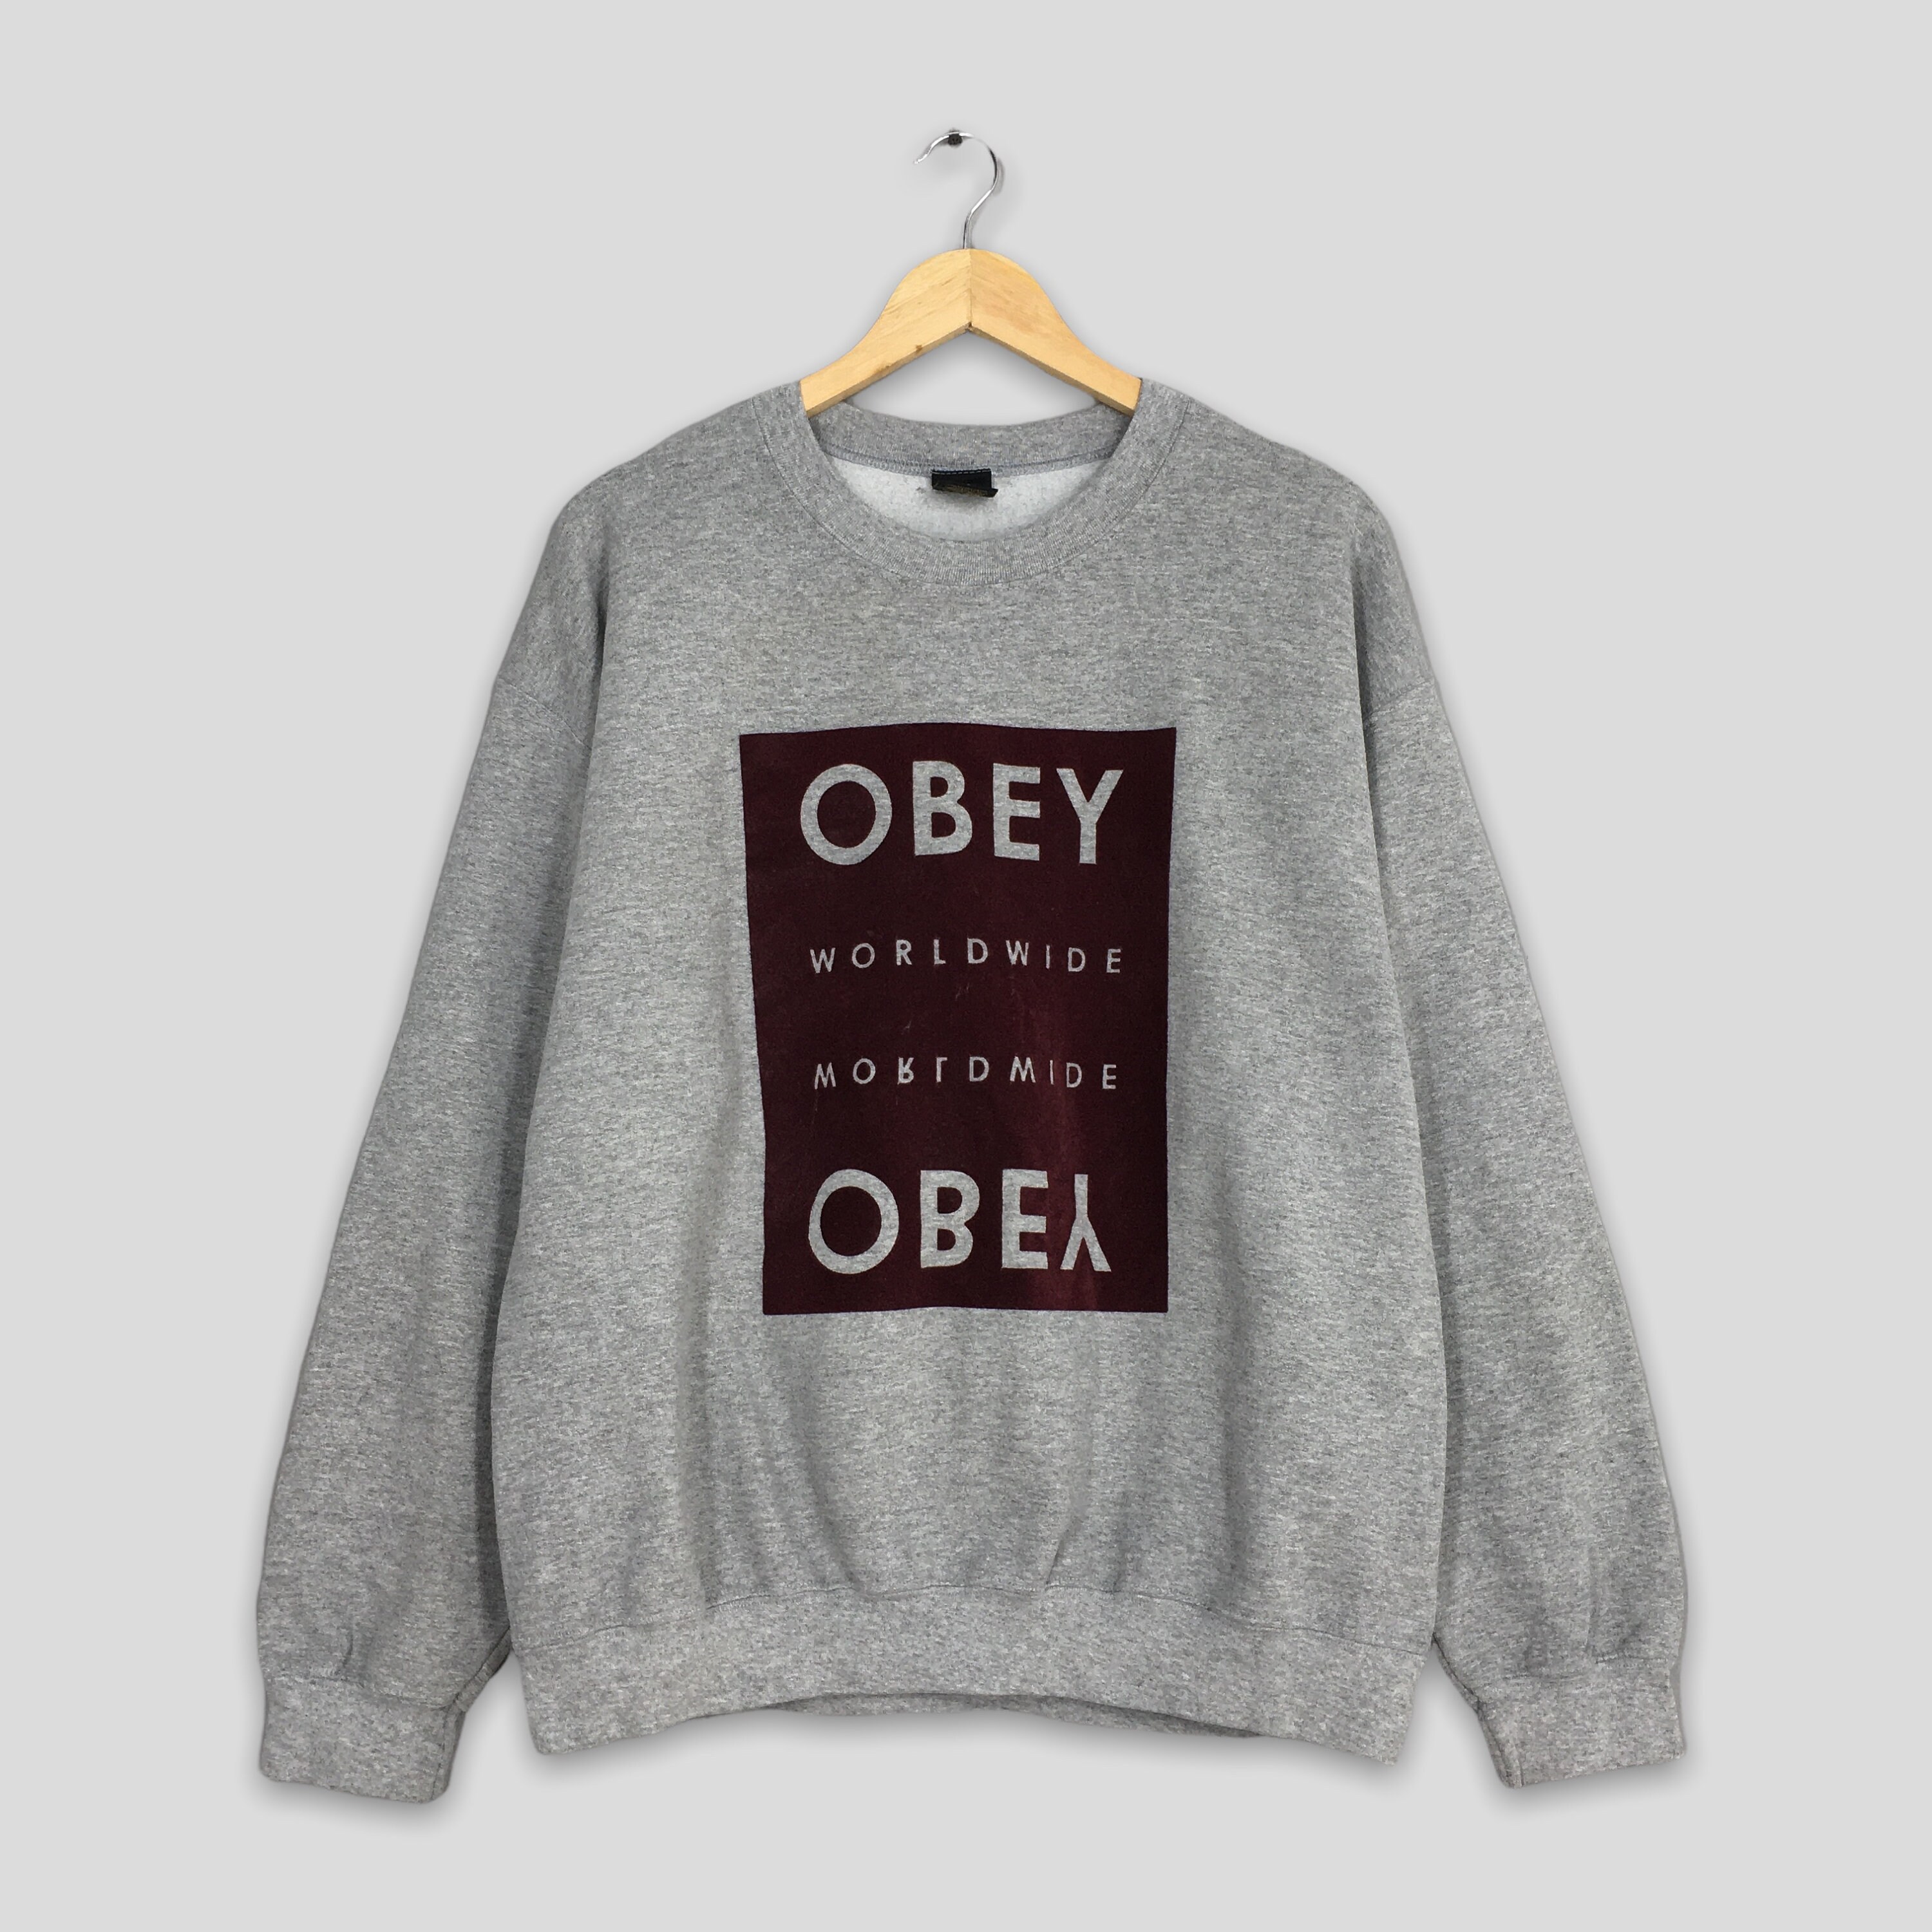 Vintage Obey Worldwide Box Logo Sweatshirt Large - Etsy